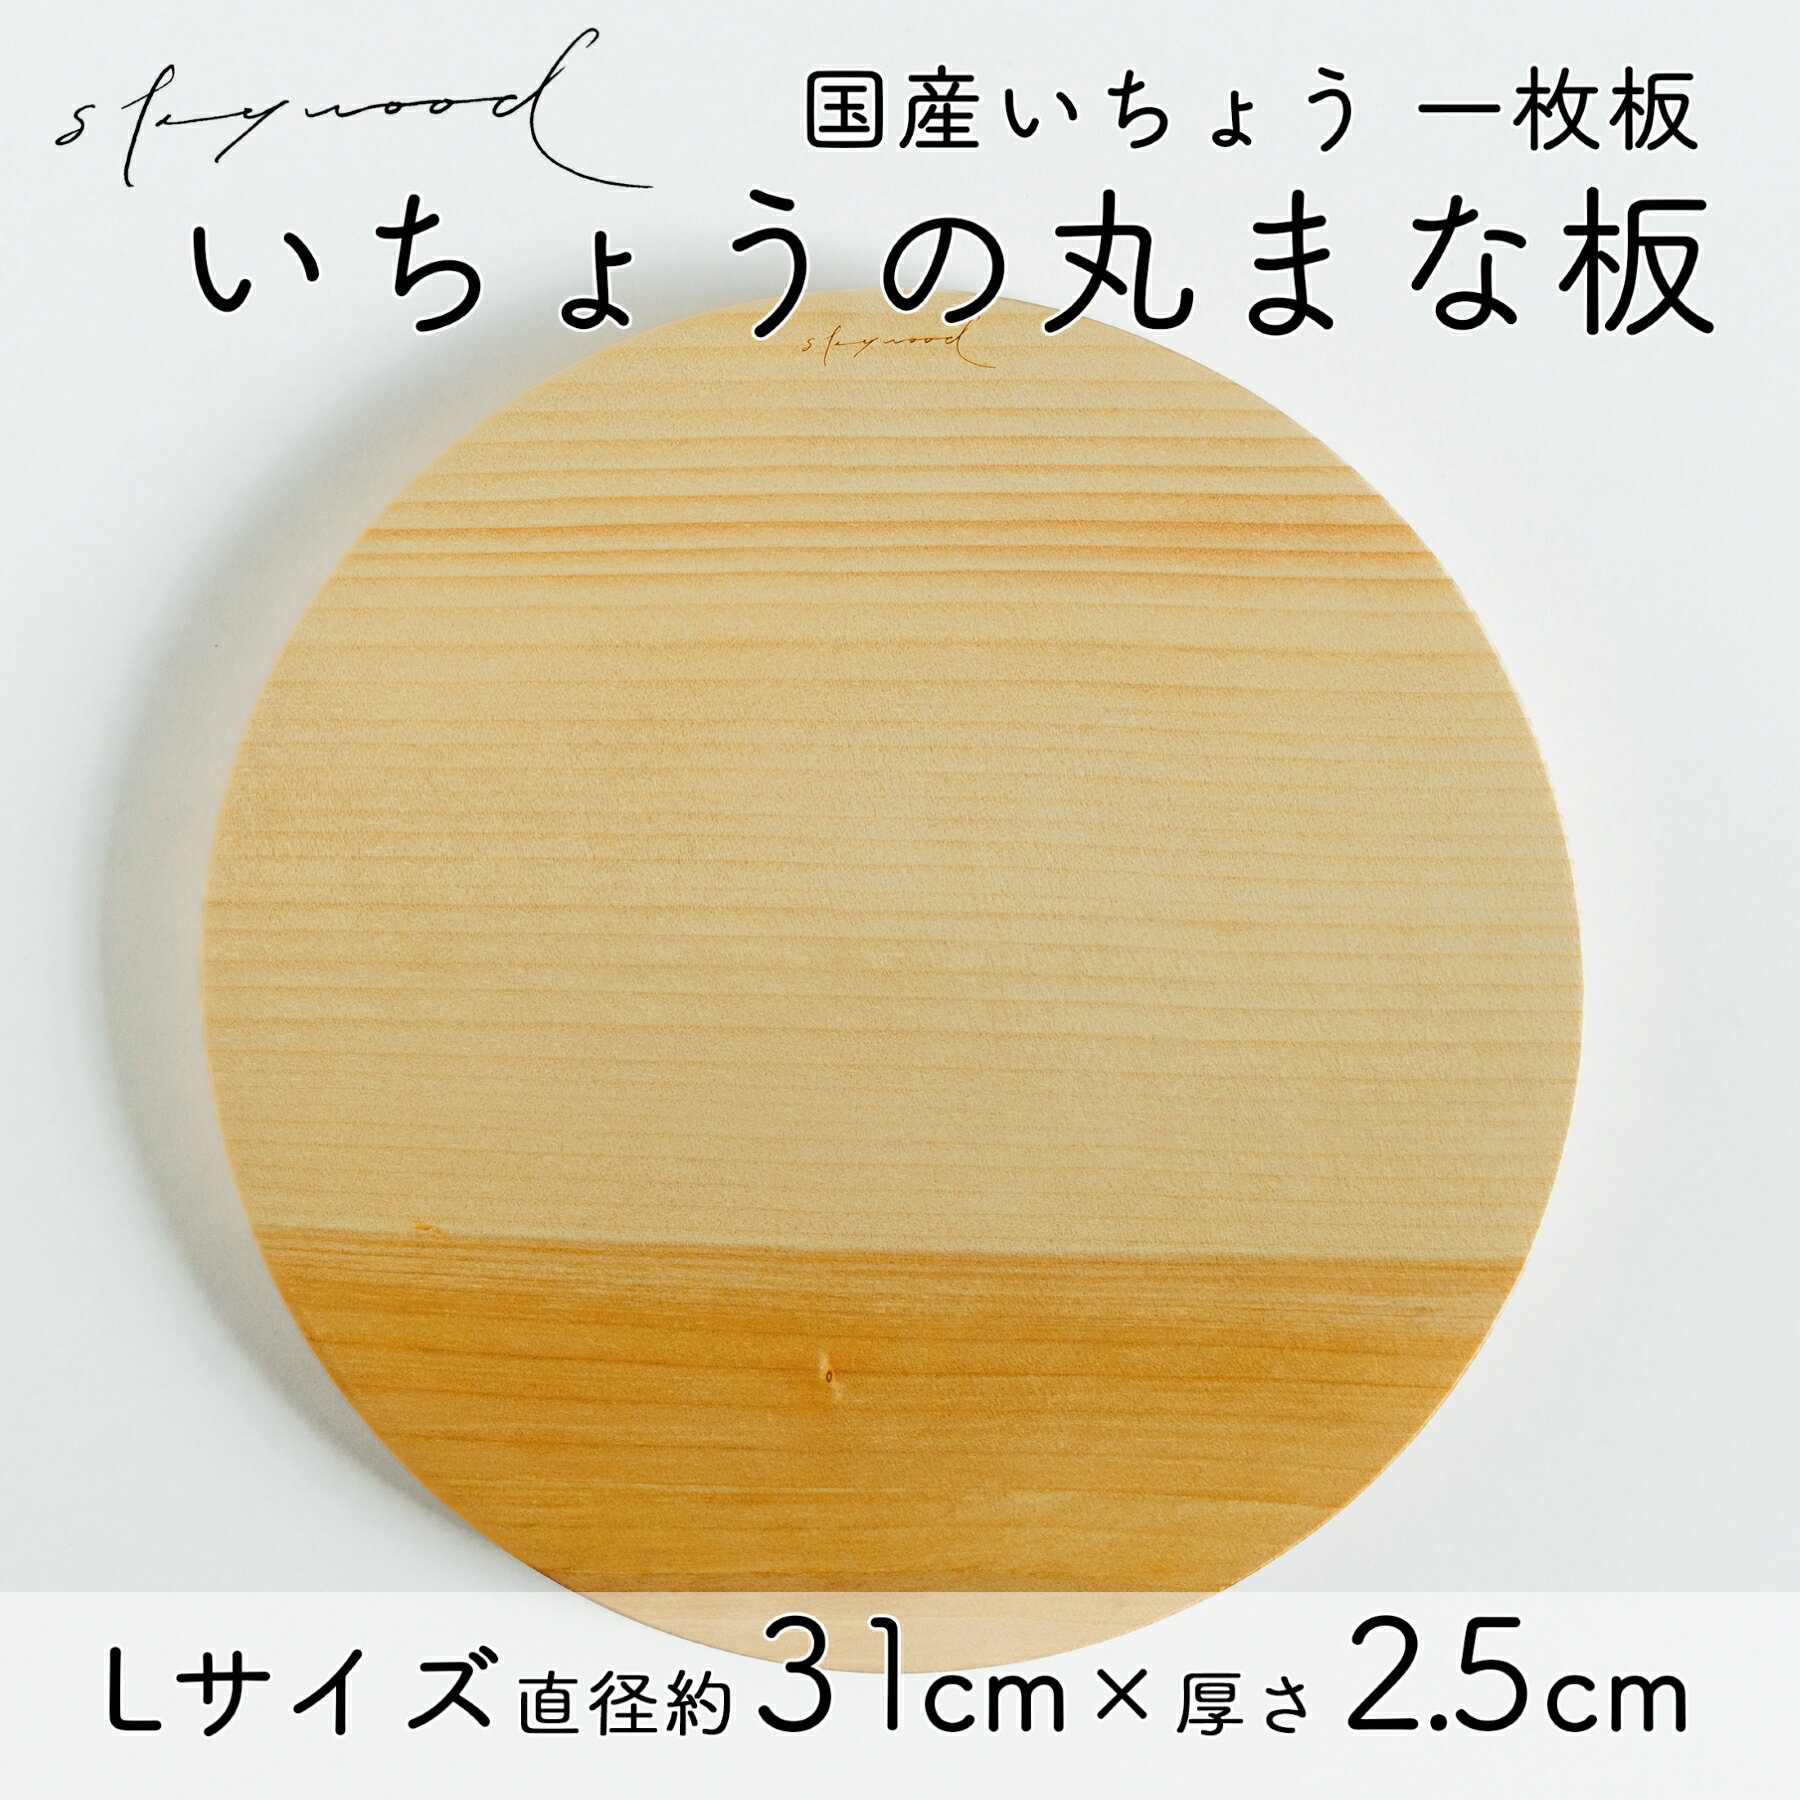 いちょう 一枚板 丸まな板 Lサイズ 31cm 天然木 国産 イチョウ カッティングボード プレート テーブルウェア キッチン 台所 家事 料理